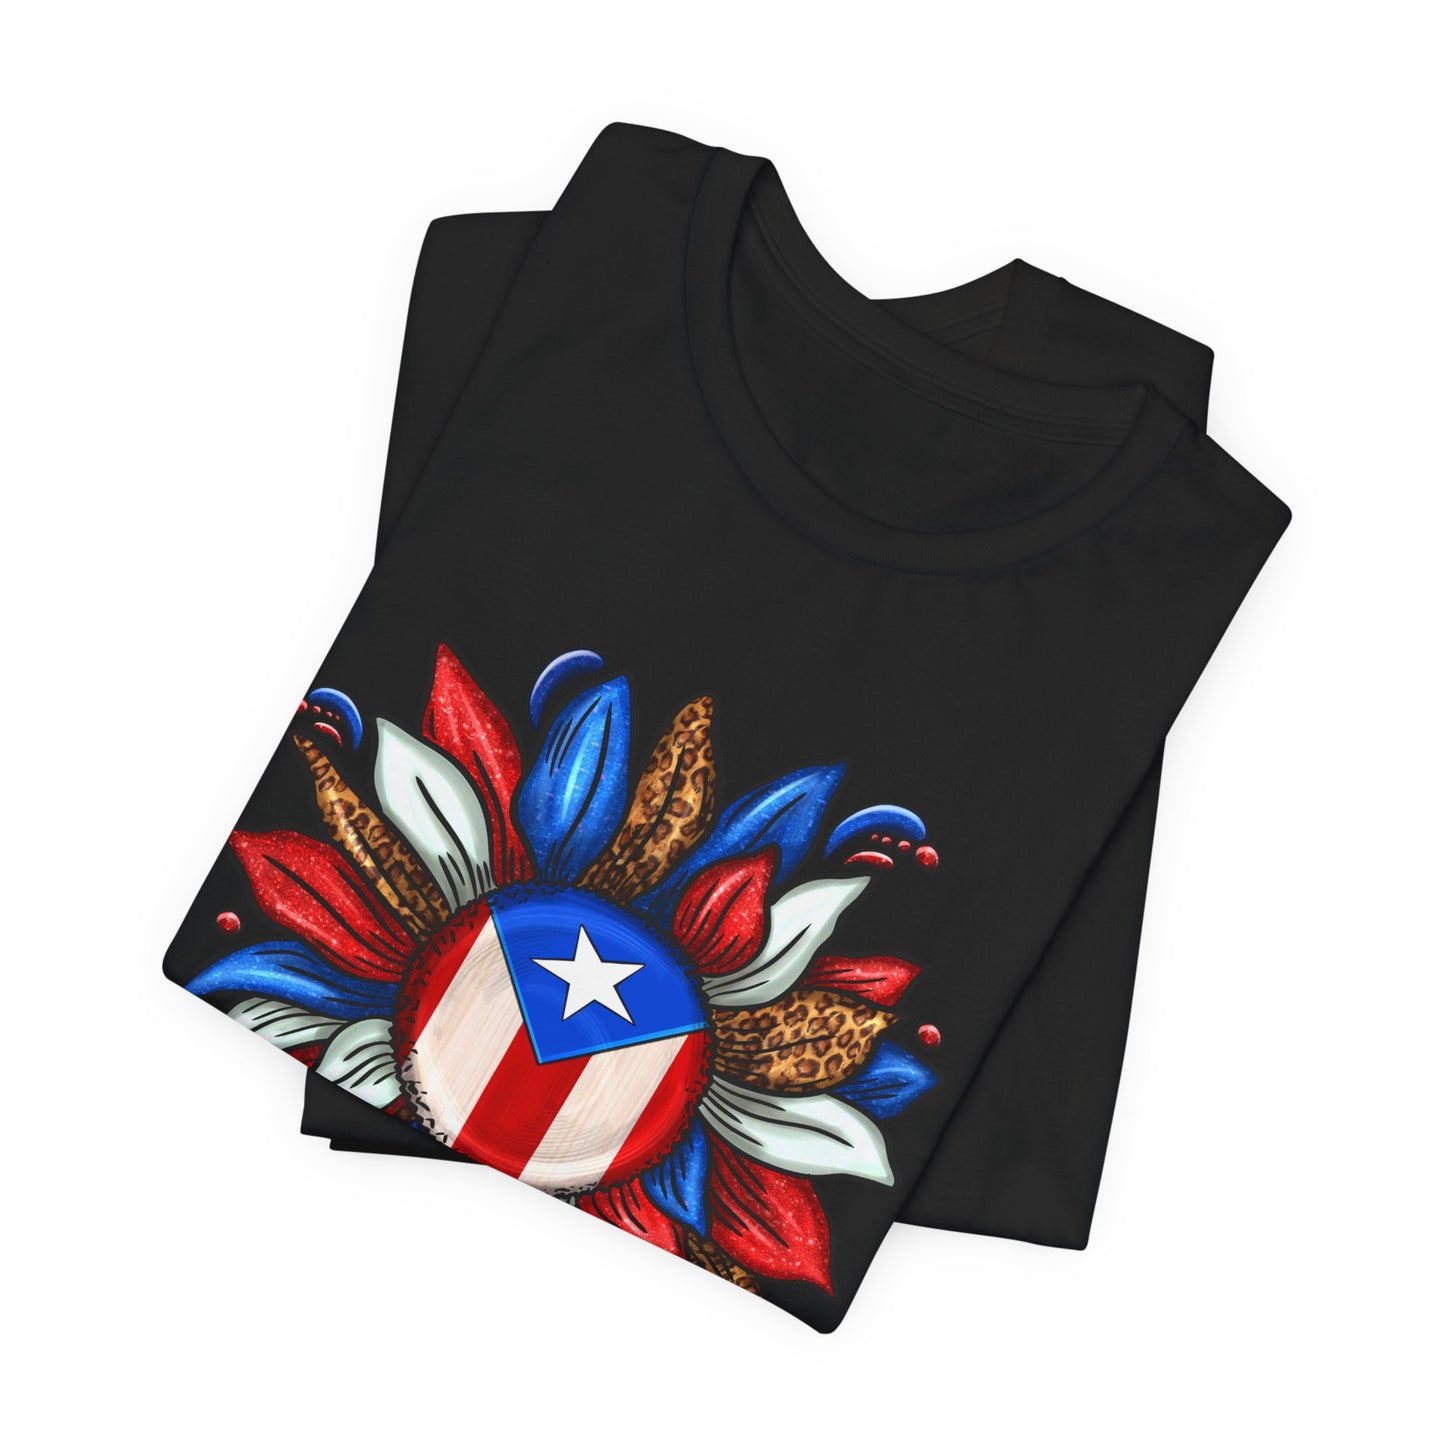 PUERTO RICO BLOOMING FLAG Boricua Unisex Shirt 4everBoricua™️ -Black